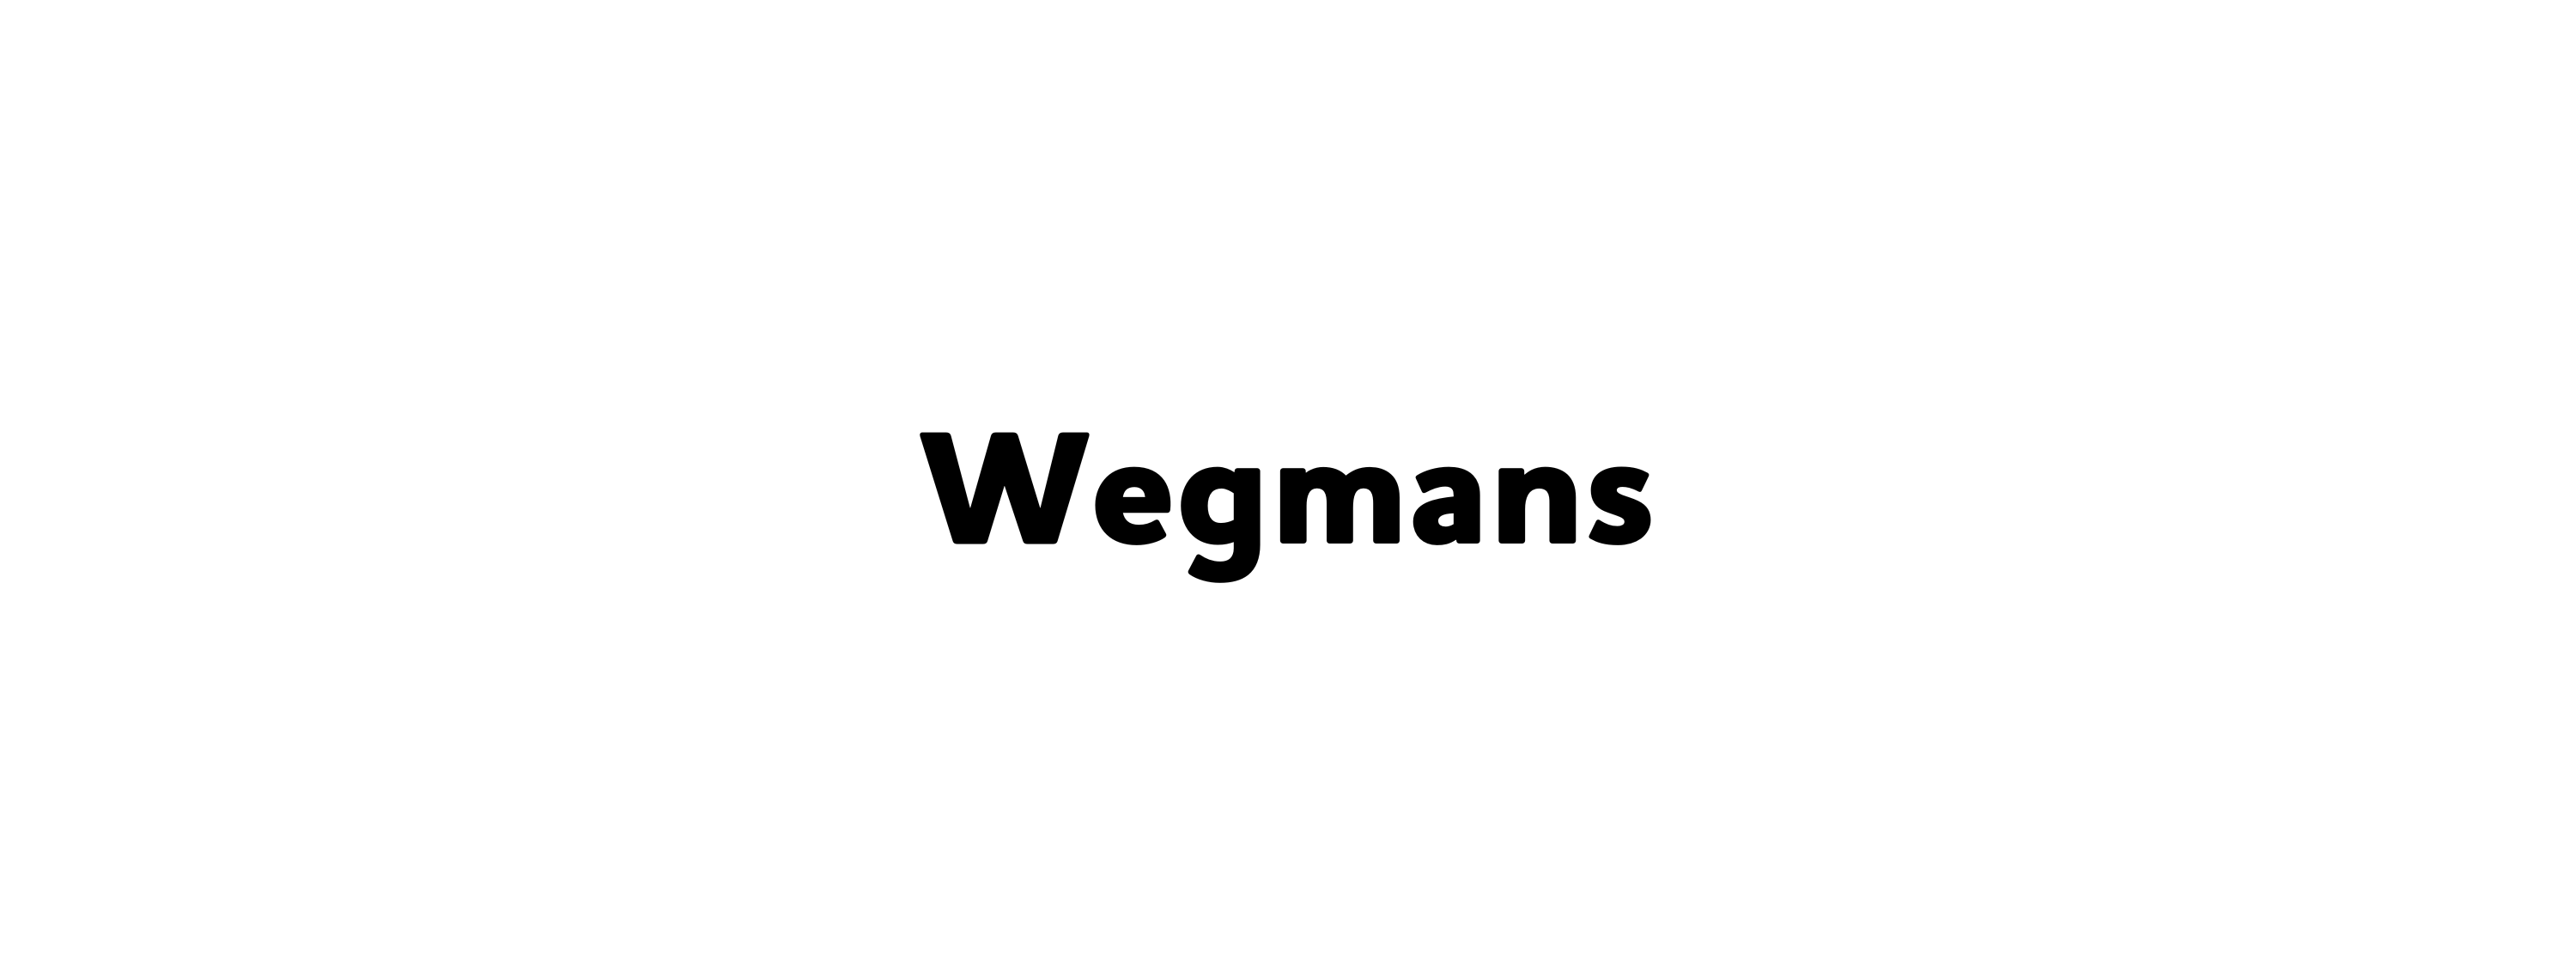 9e. Wegmans (amigo)